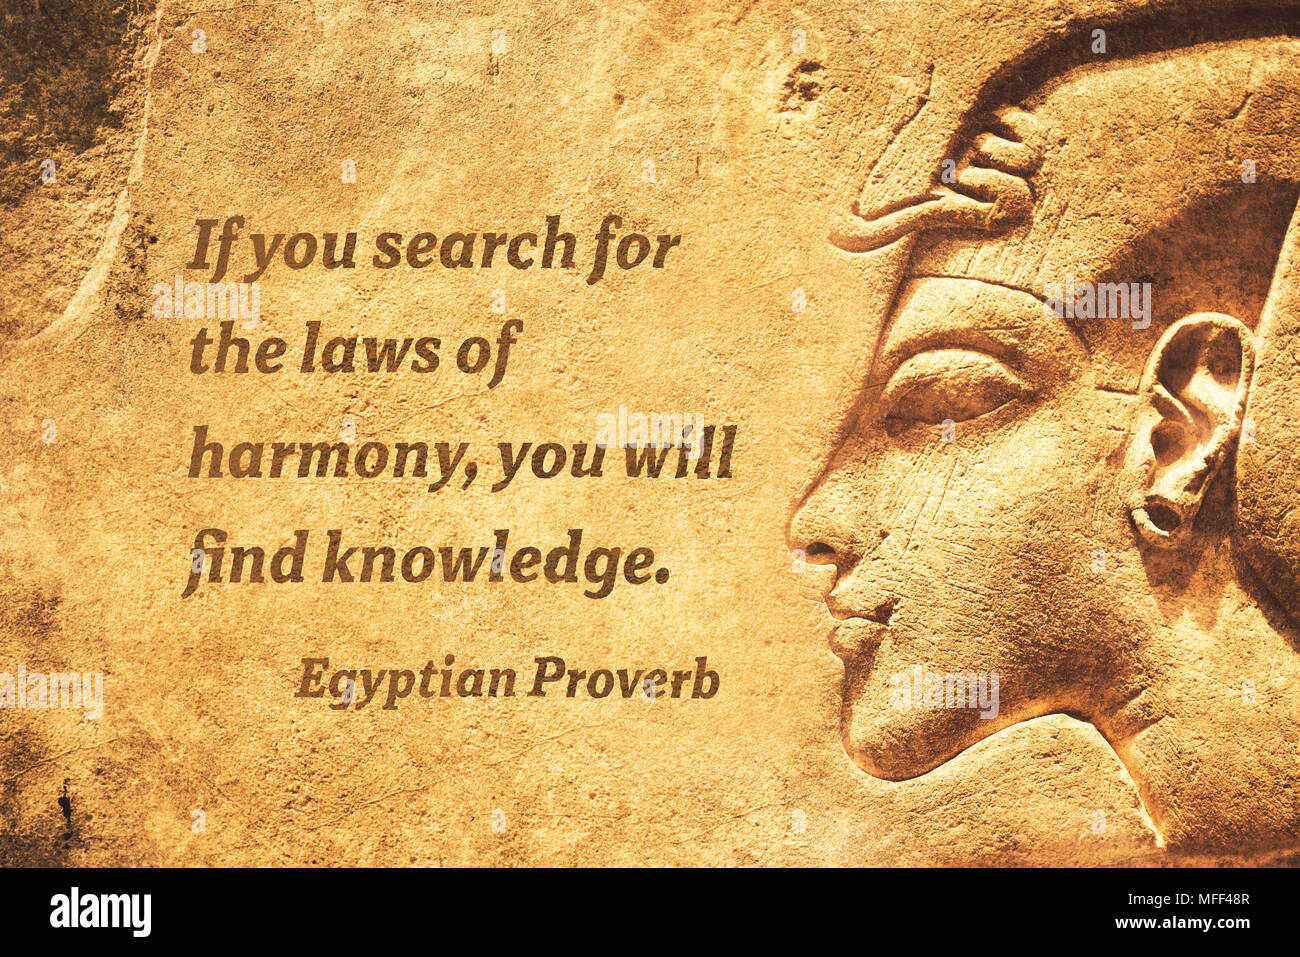 Se cercate per le leggi di armonia, troverete la conoscenza - antico proverbio egiziano citazione Foto Stock